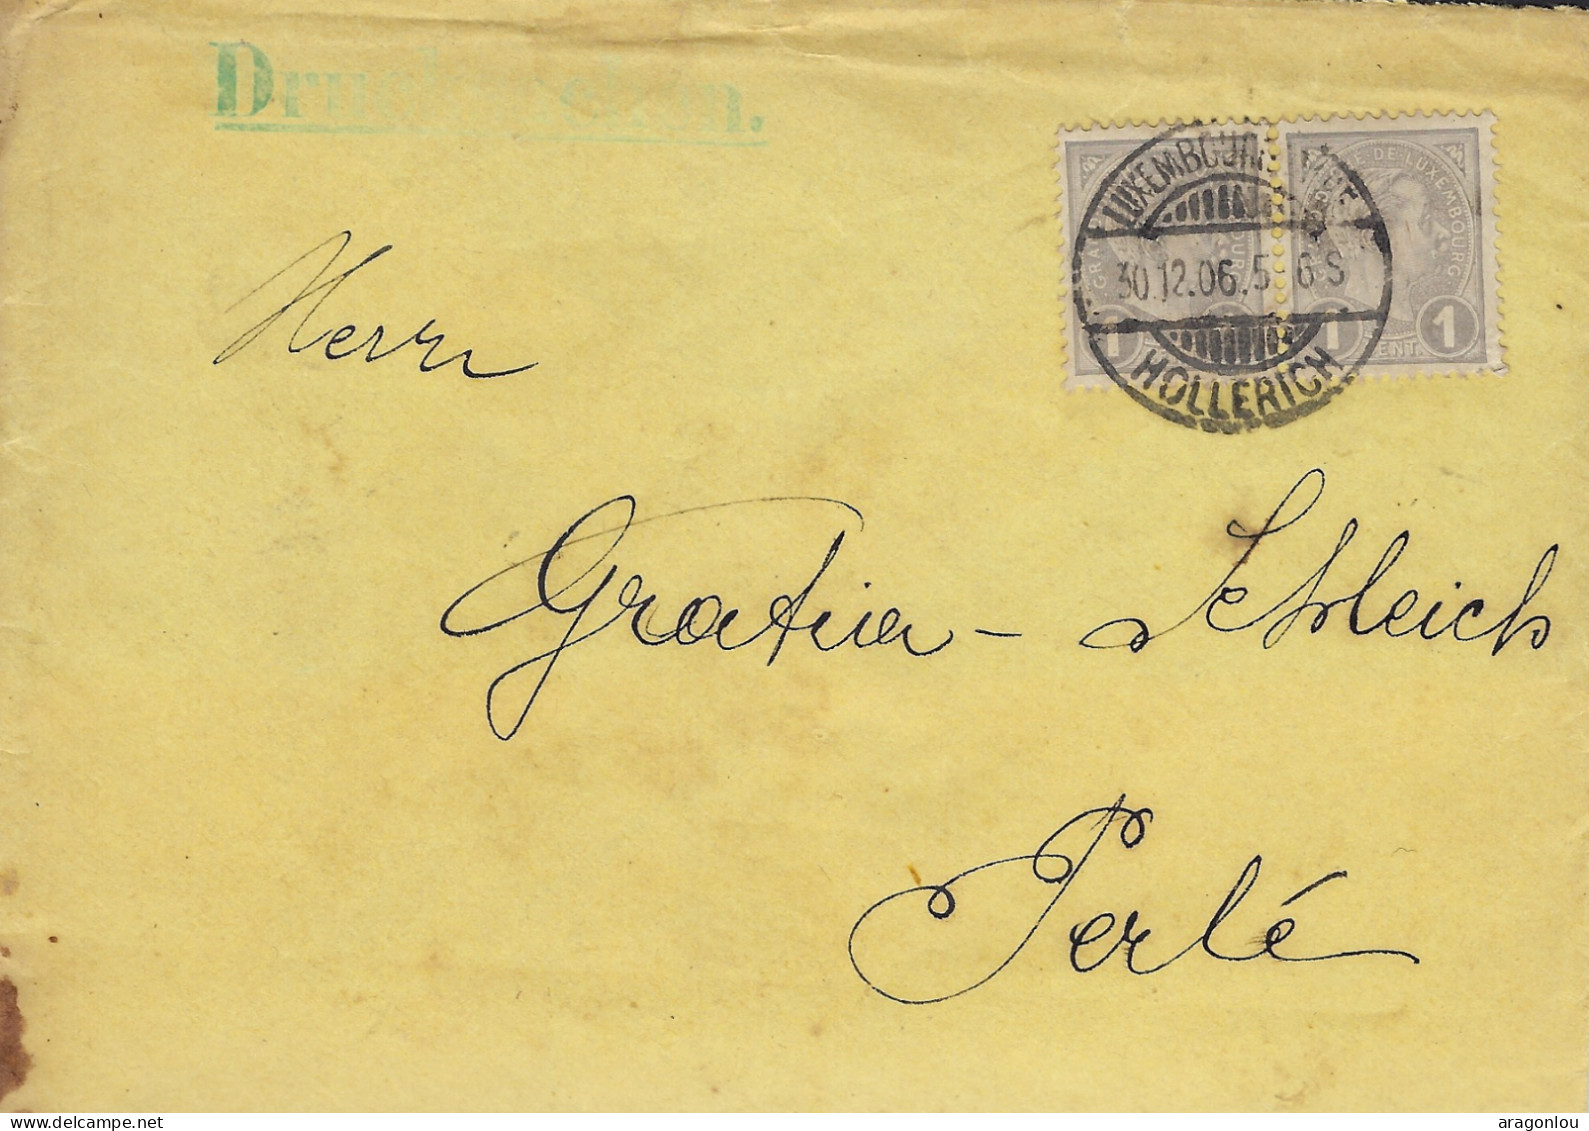 Luxembourg - Luxemburg - Lettre  1906  -  Adressiert An Herrn  GRATIA - SCHLEICH , PERLÉ - Lettres & Documents